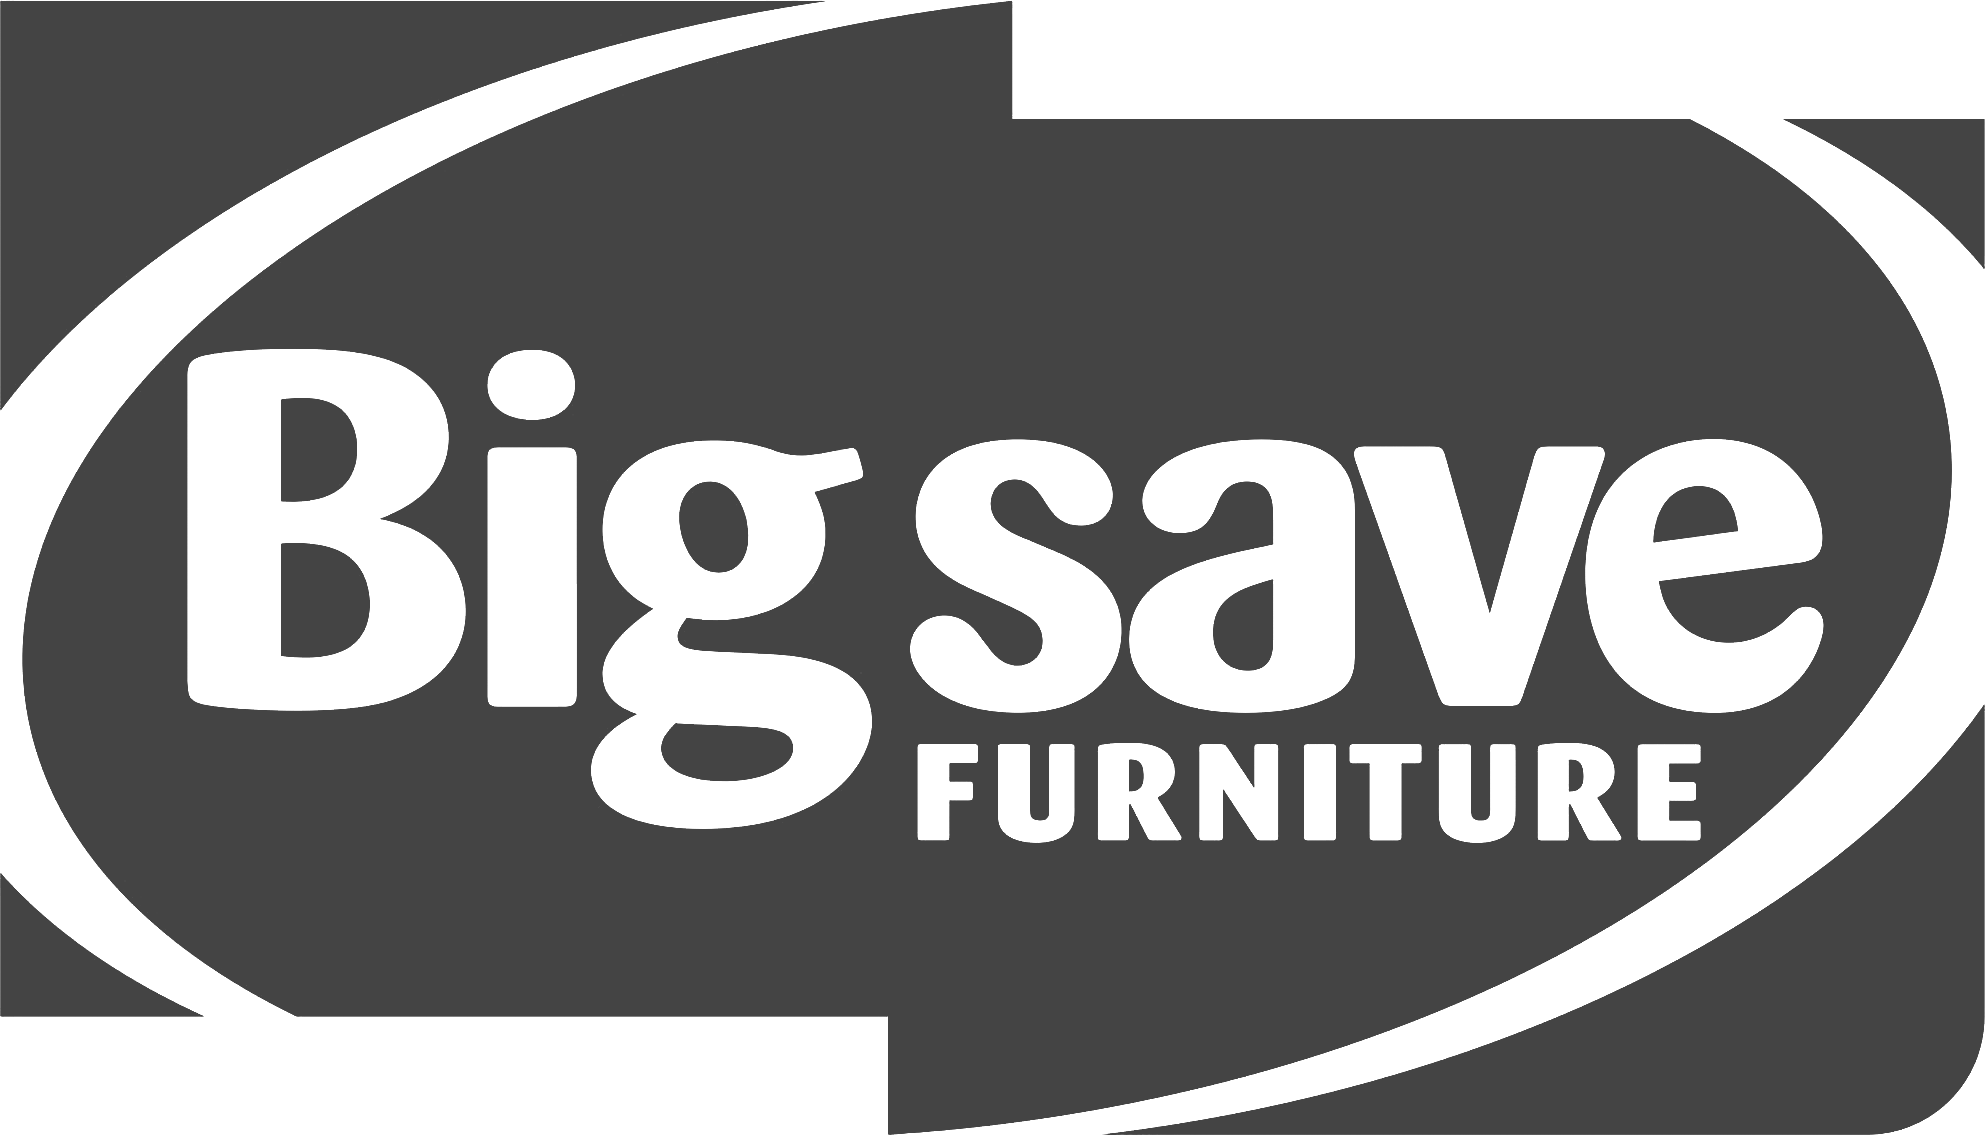 Big Save Furniture logo